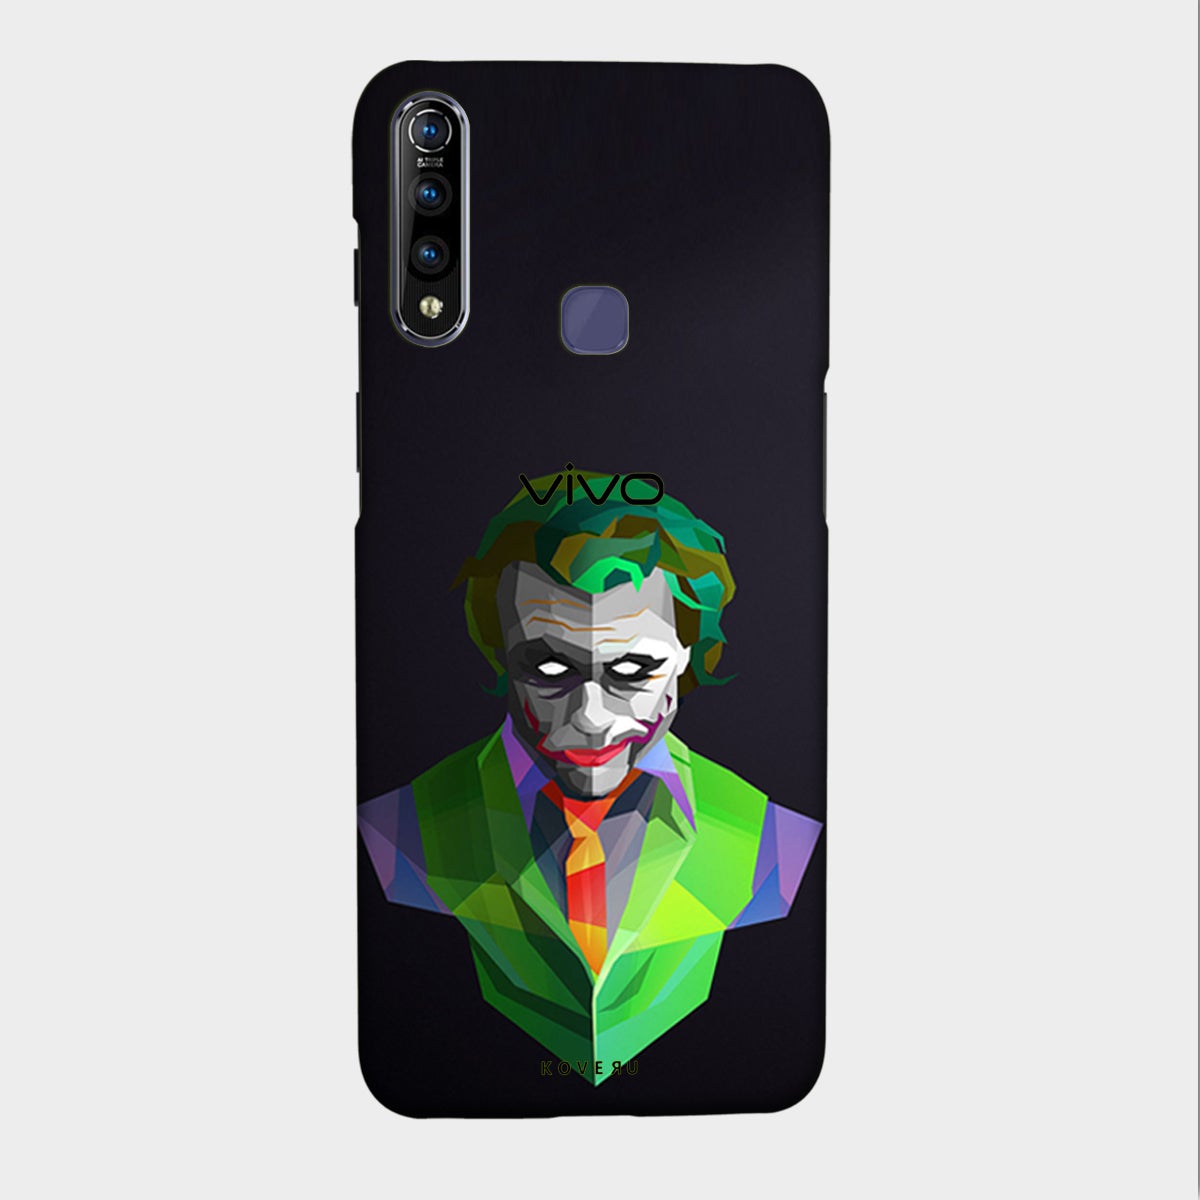 Joker Green - Mobile Phone Cover - Hard Case - Vivo